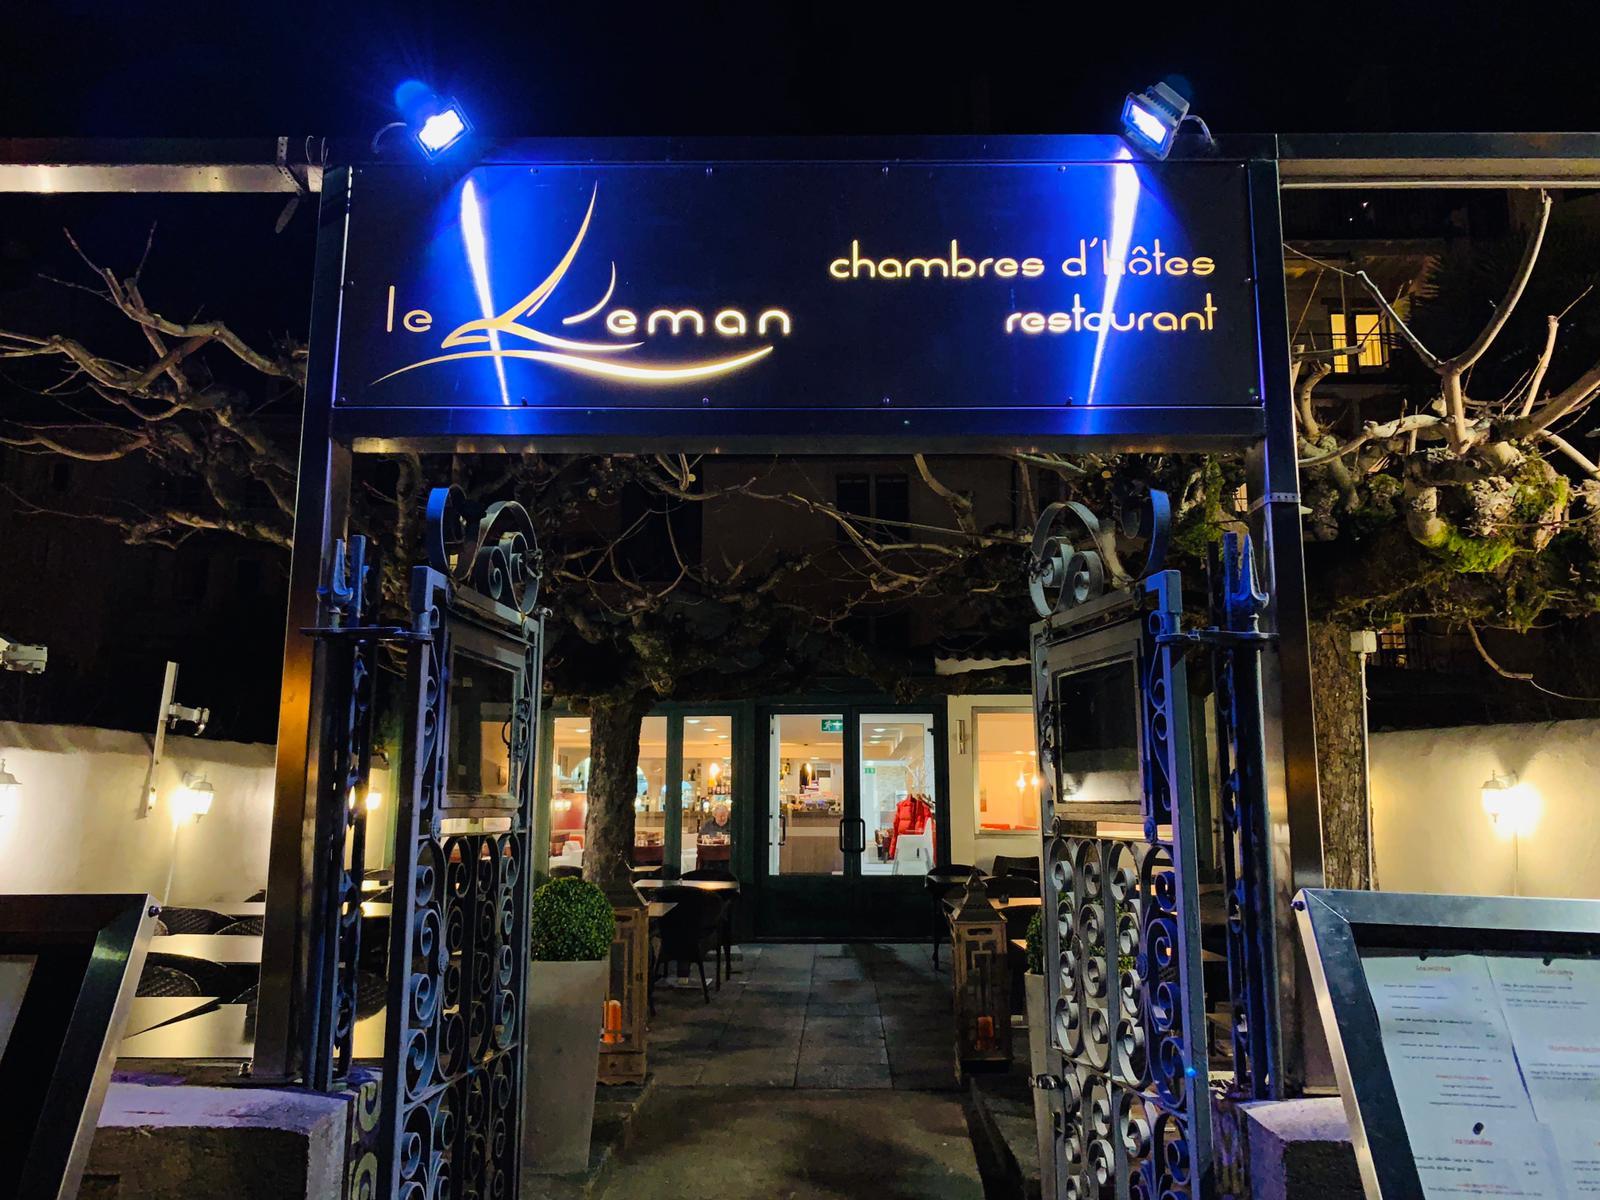 Restaurant Le Léman